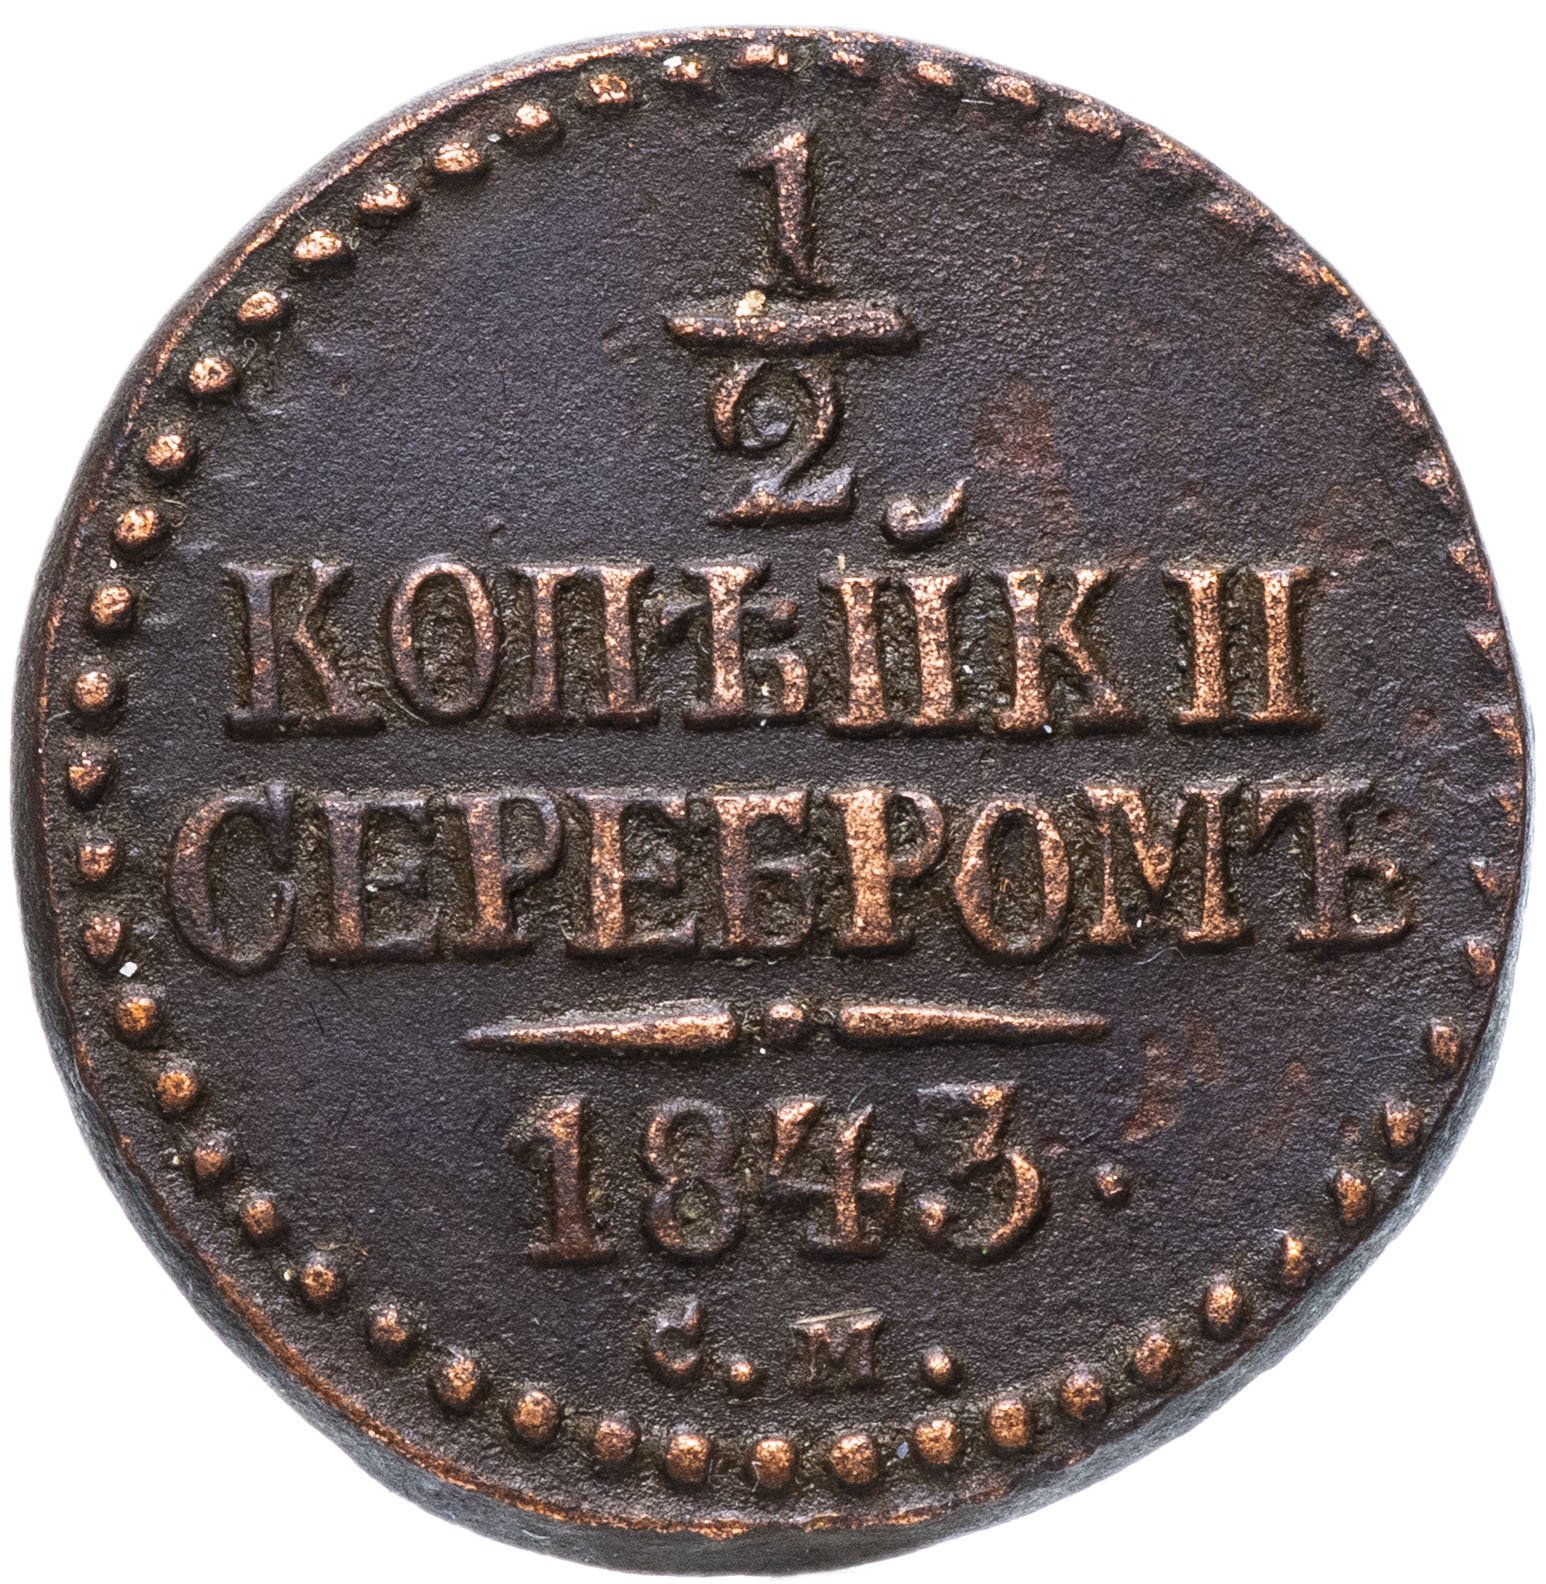 2 Копейки царские 1843